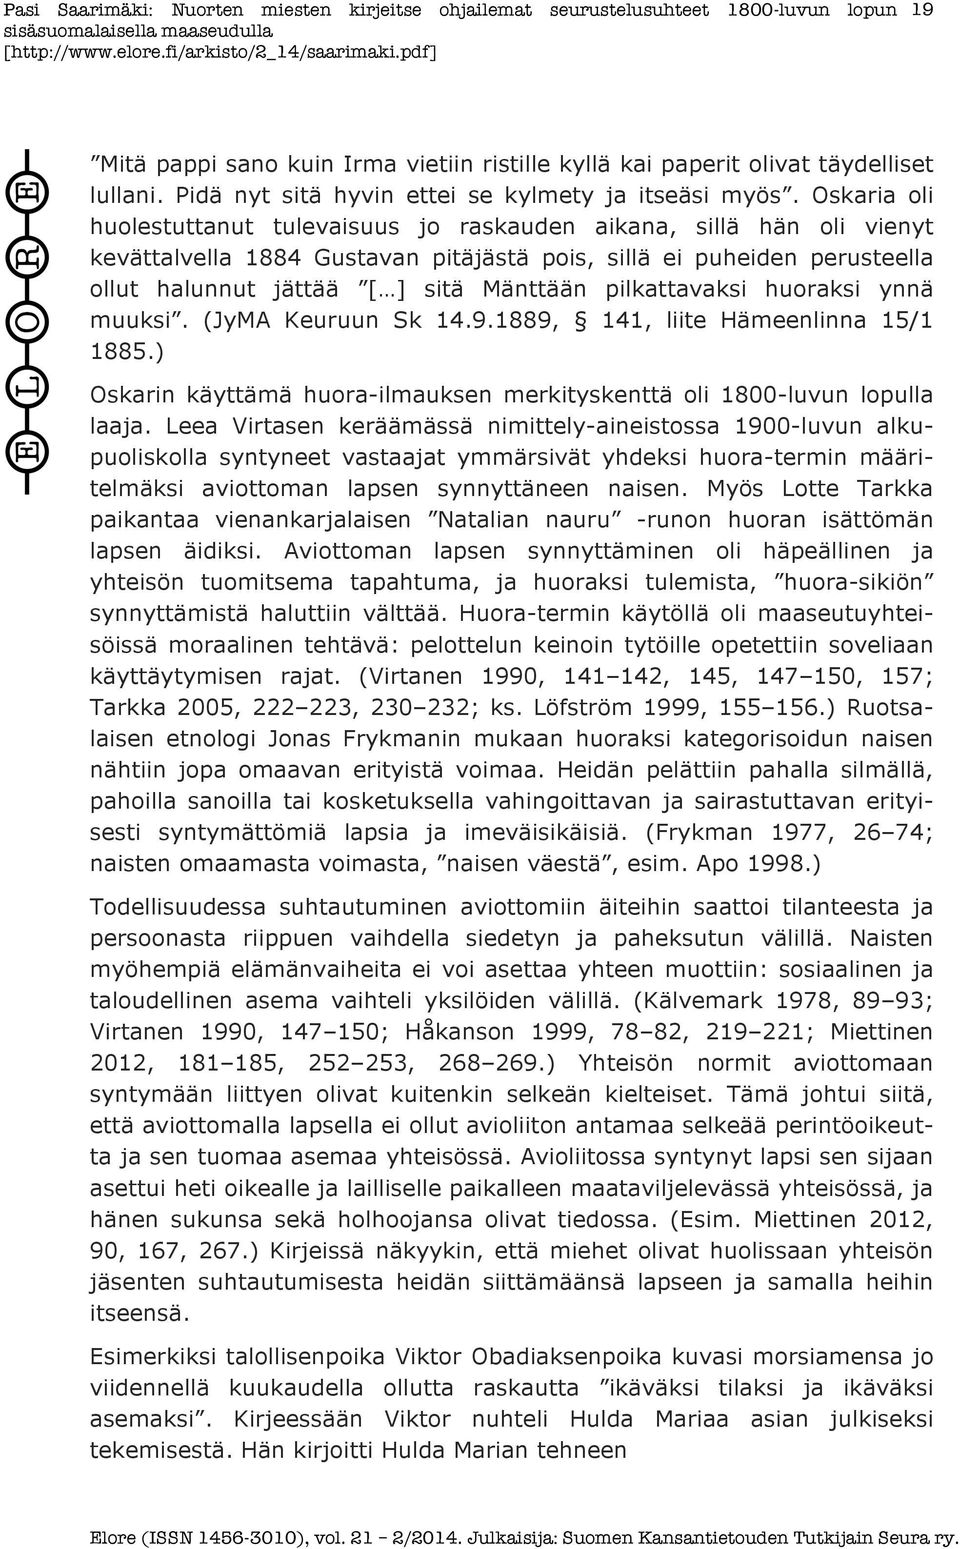 pilkattavaksi huoraksi ynnä muuksi. (JyMA Keuruun Sk 14.9.1889, 141, liite Hämeenlinna 15/1 1885.) Oskarin käyttämä huora-ilmauksen merkityskenttä oli 1800-luvun lopulla laaja.